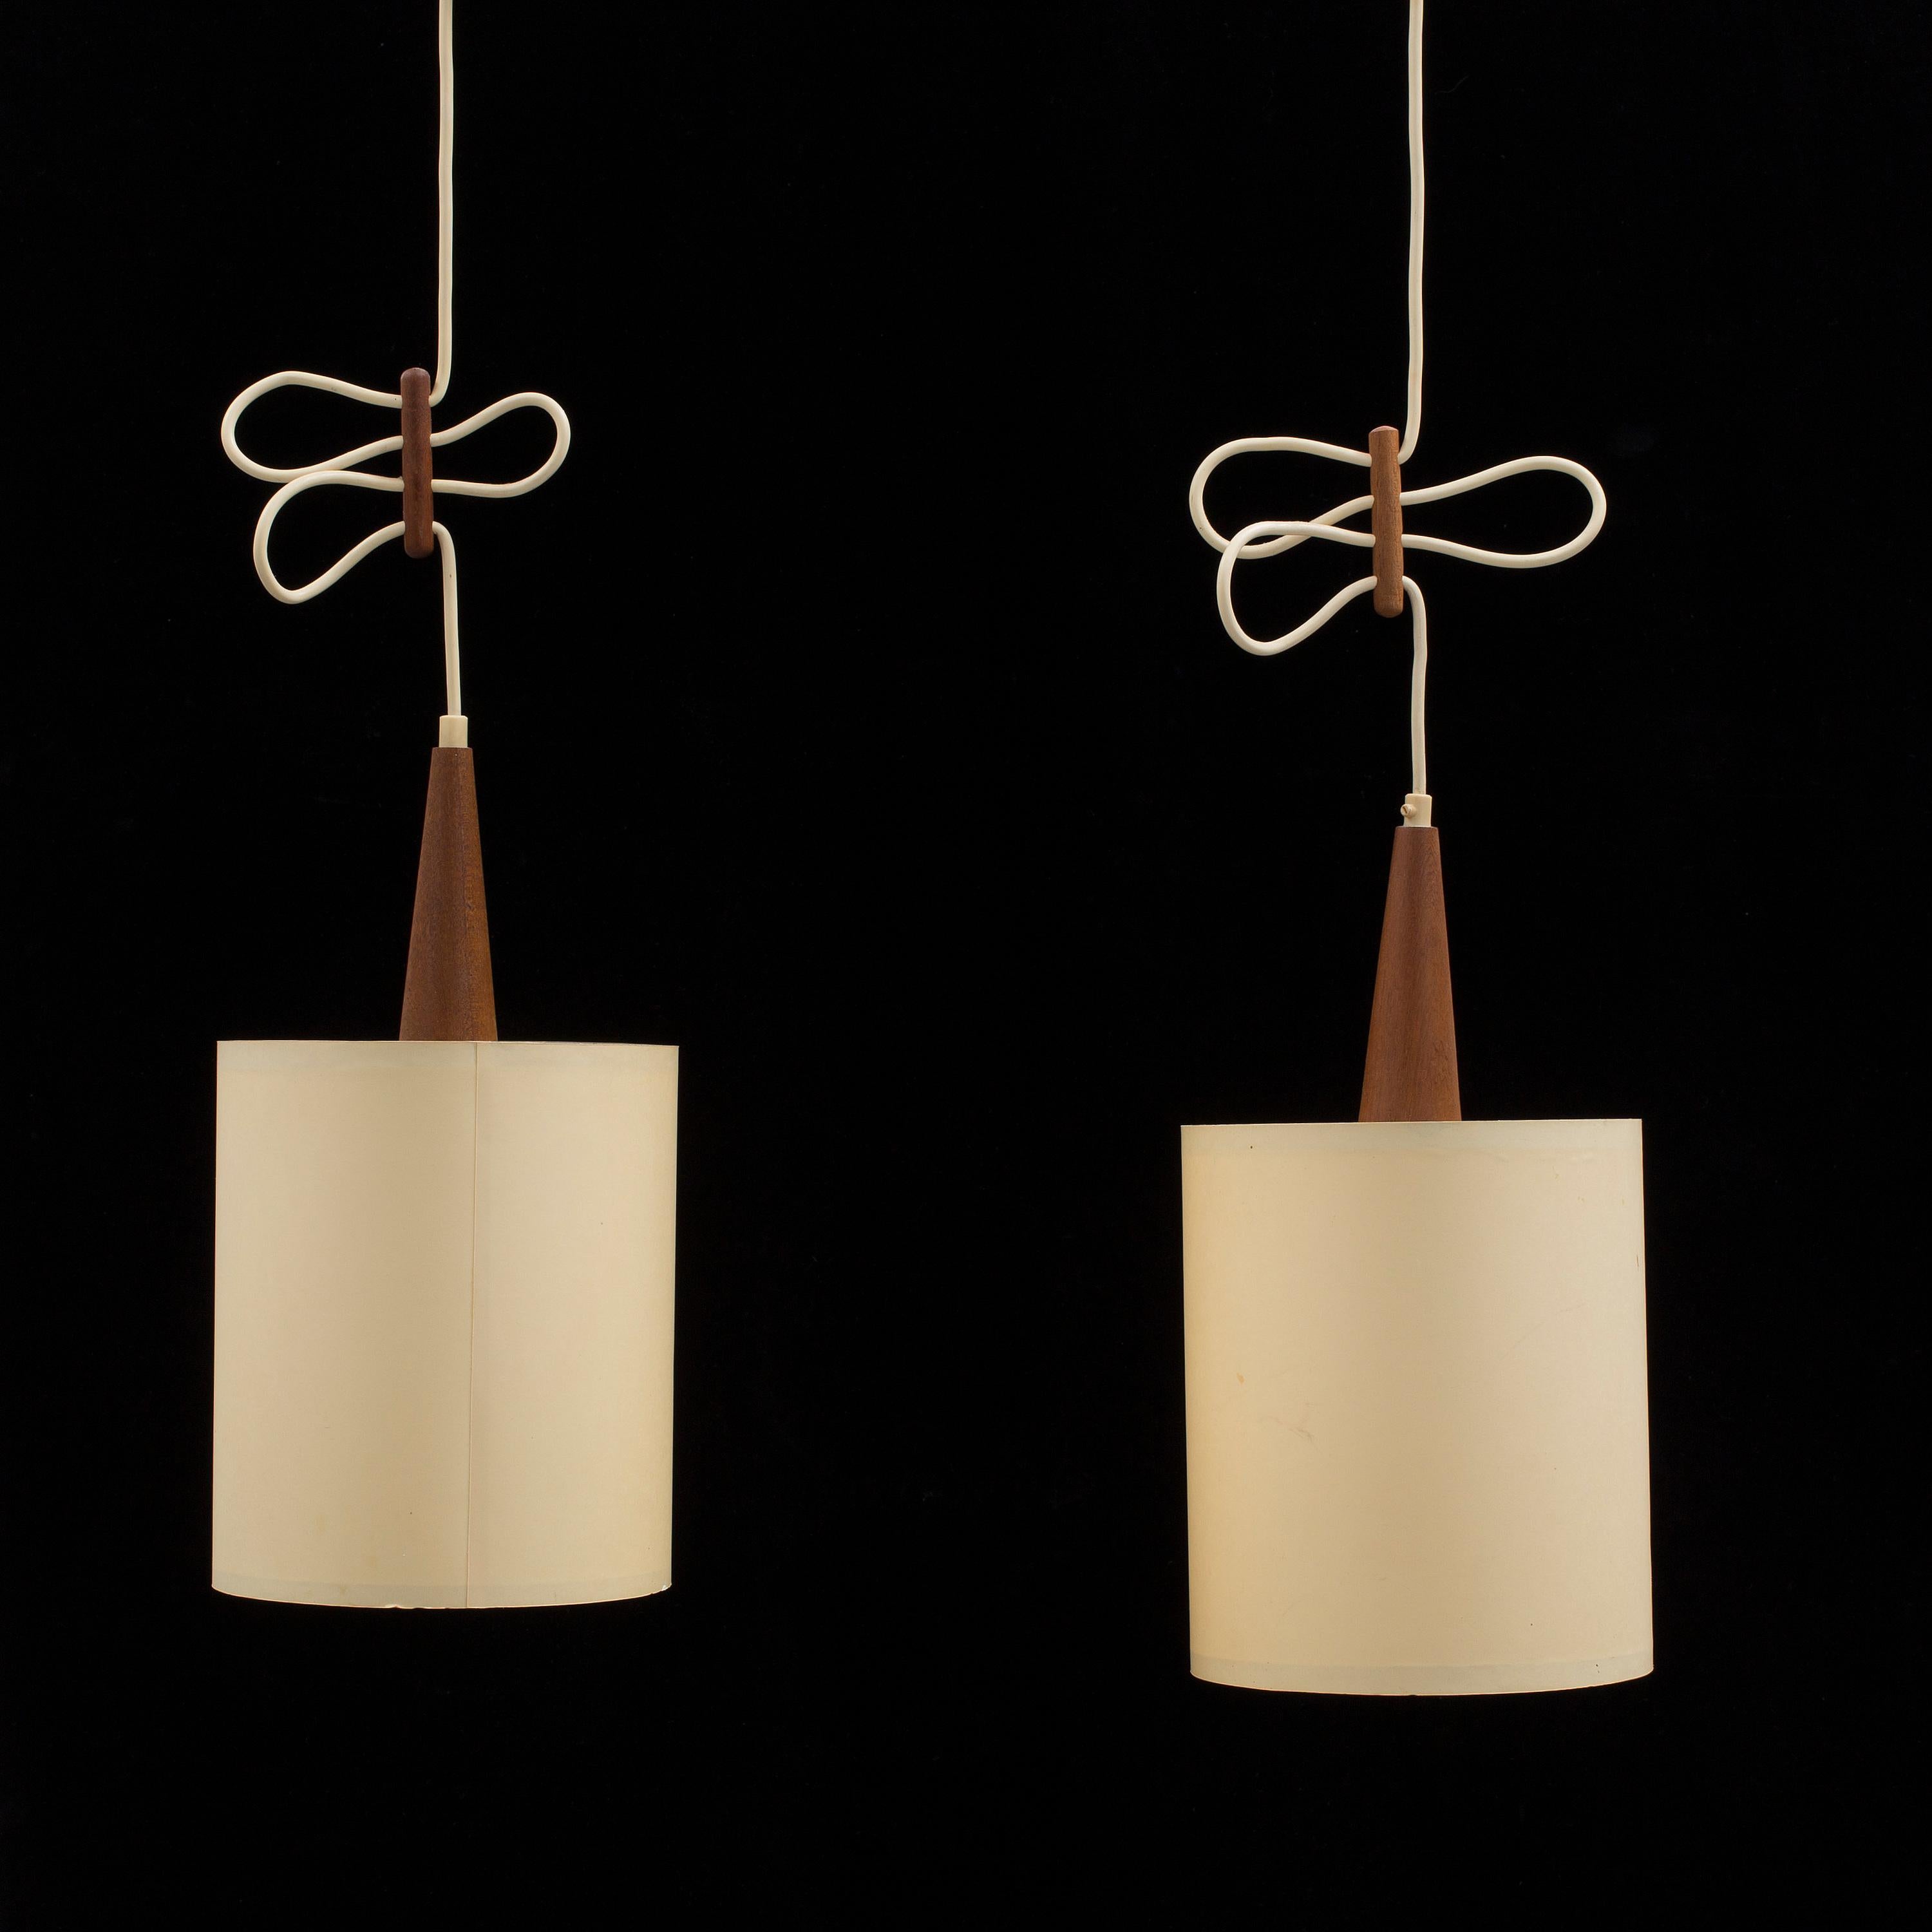 Rare paire de lampes suspendues ajustables par  Svend Aage Holm Sorensen Danemark 1960
Nouvellement recâblé aux normes européennes 
Bon état
